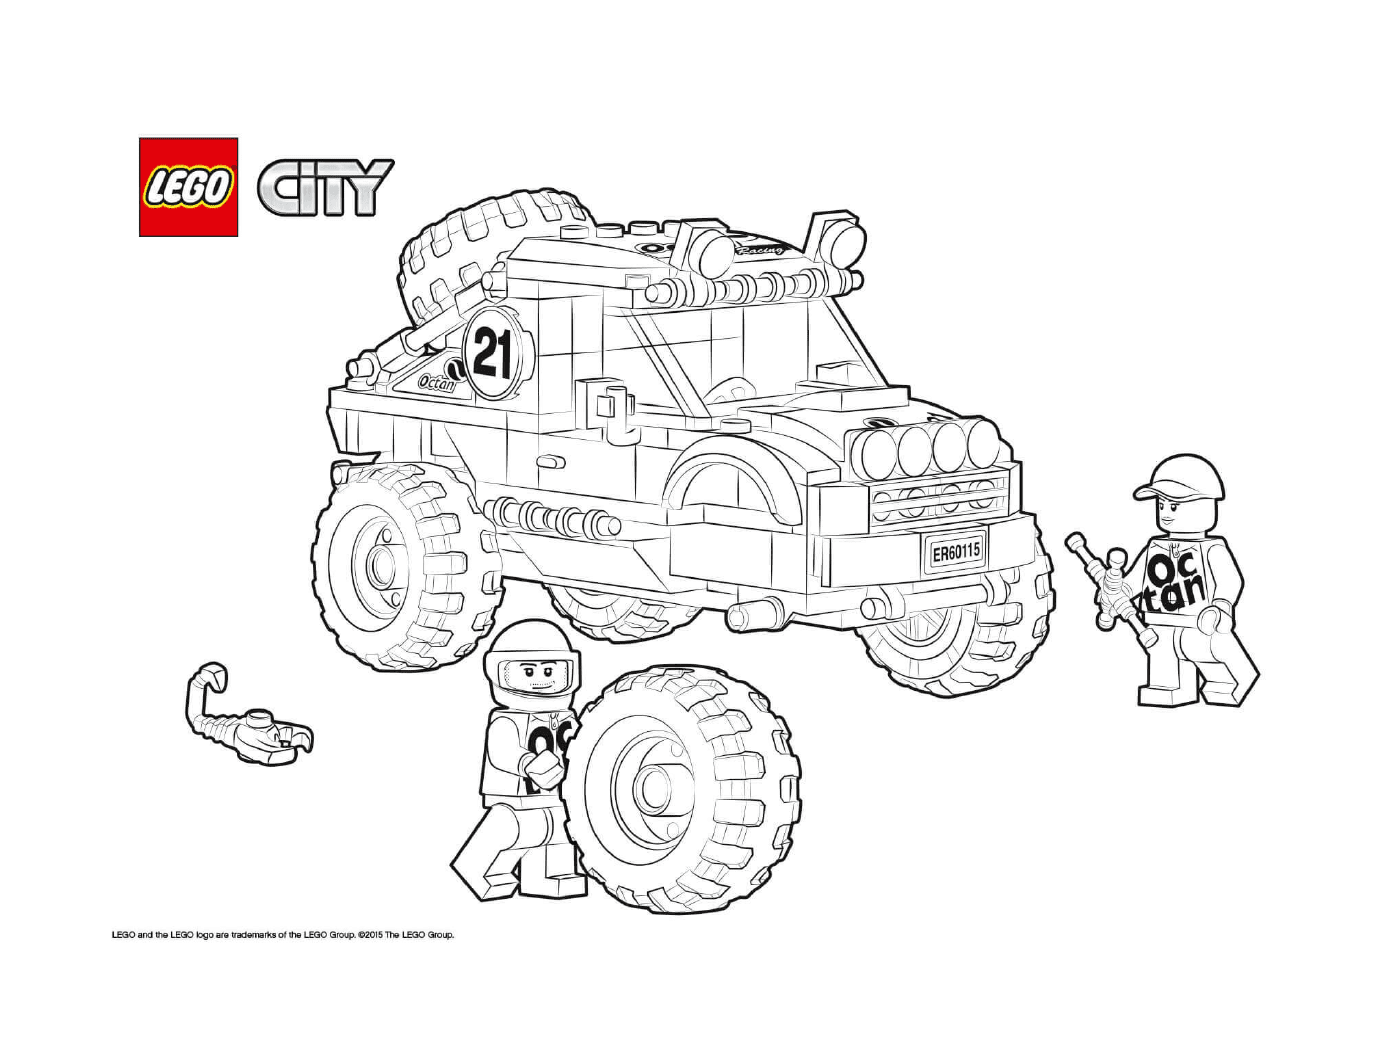   4x4 tout-terrain Lego City 